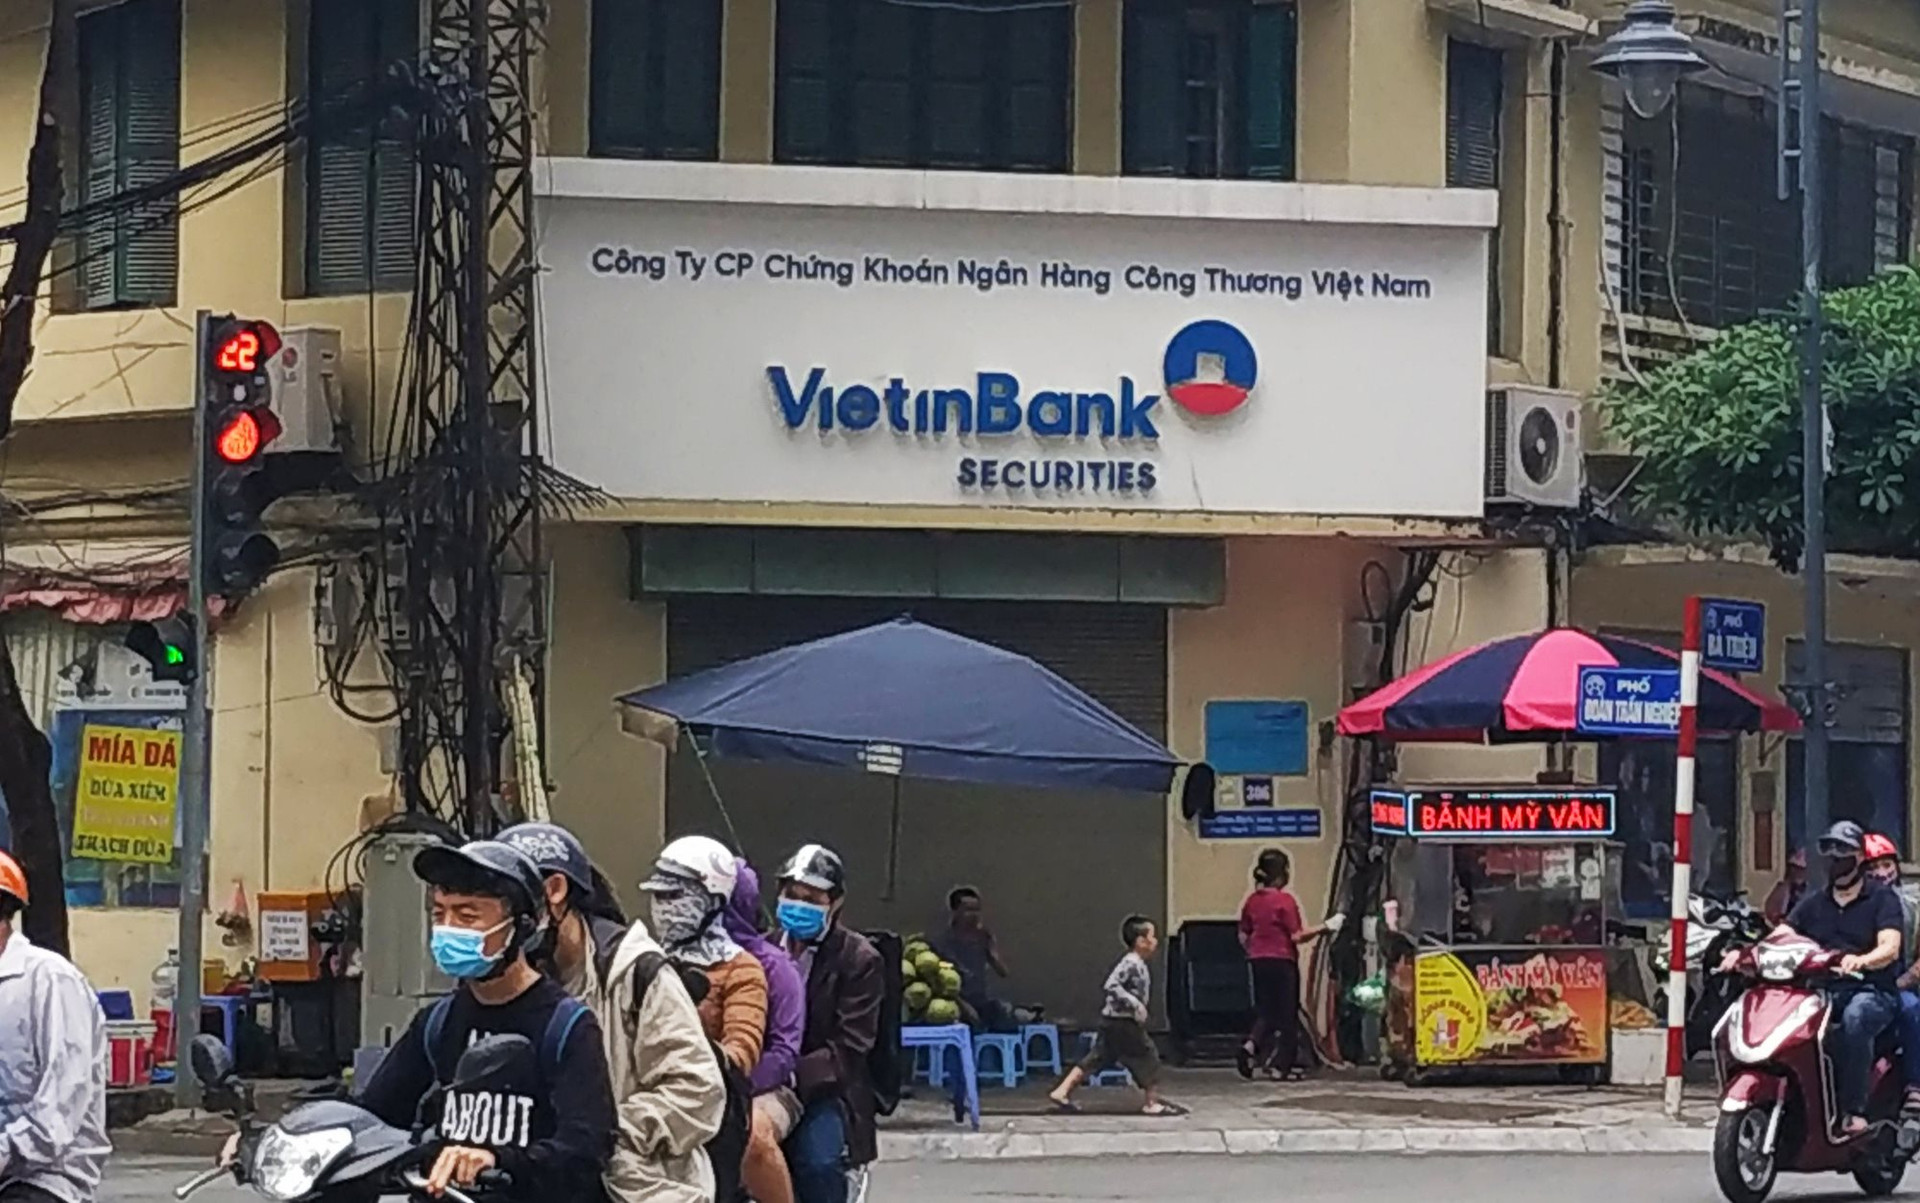 Vì sao chứng khoán VietinBank bị xử phạt gần 400 triệu đồng? - Ảnh 1.